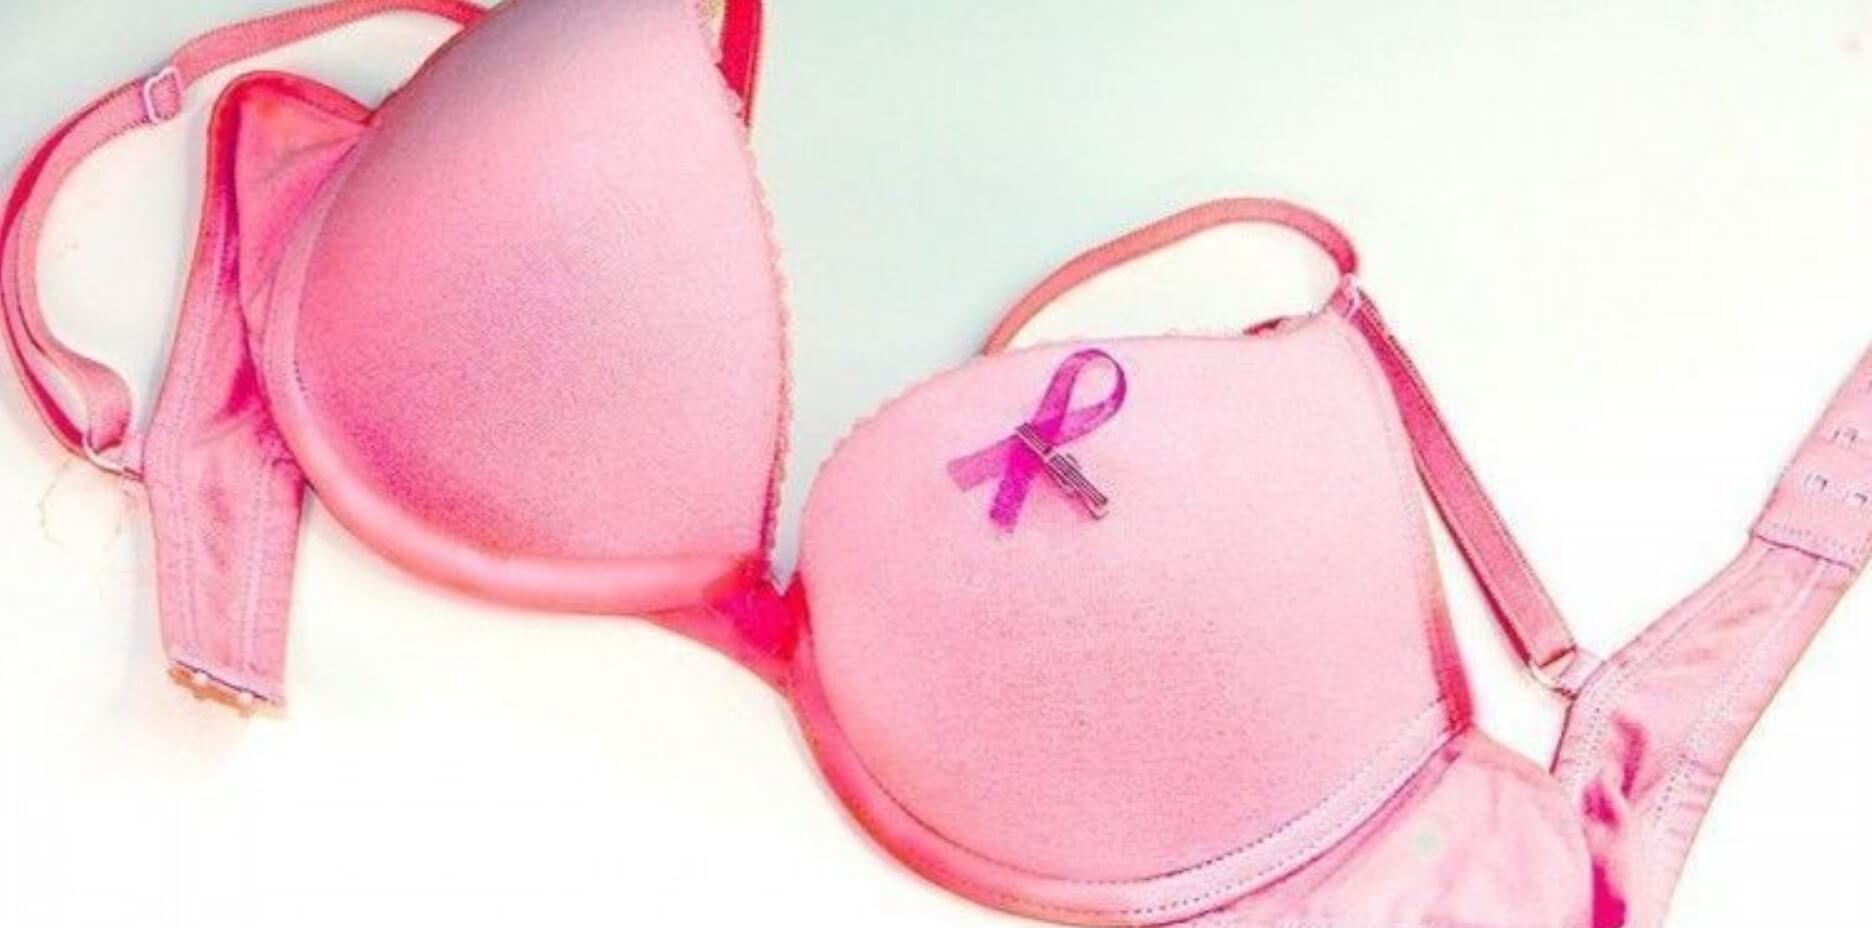 cancer de mama saber tenemos- Digital de León